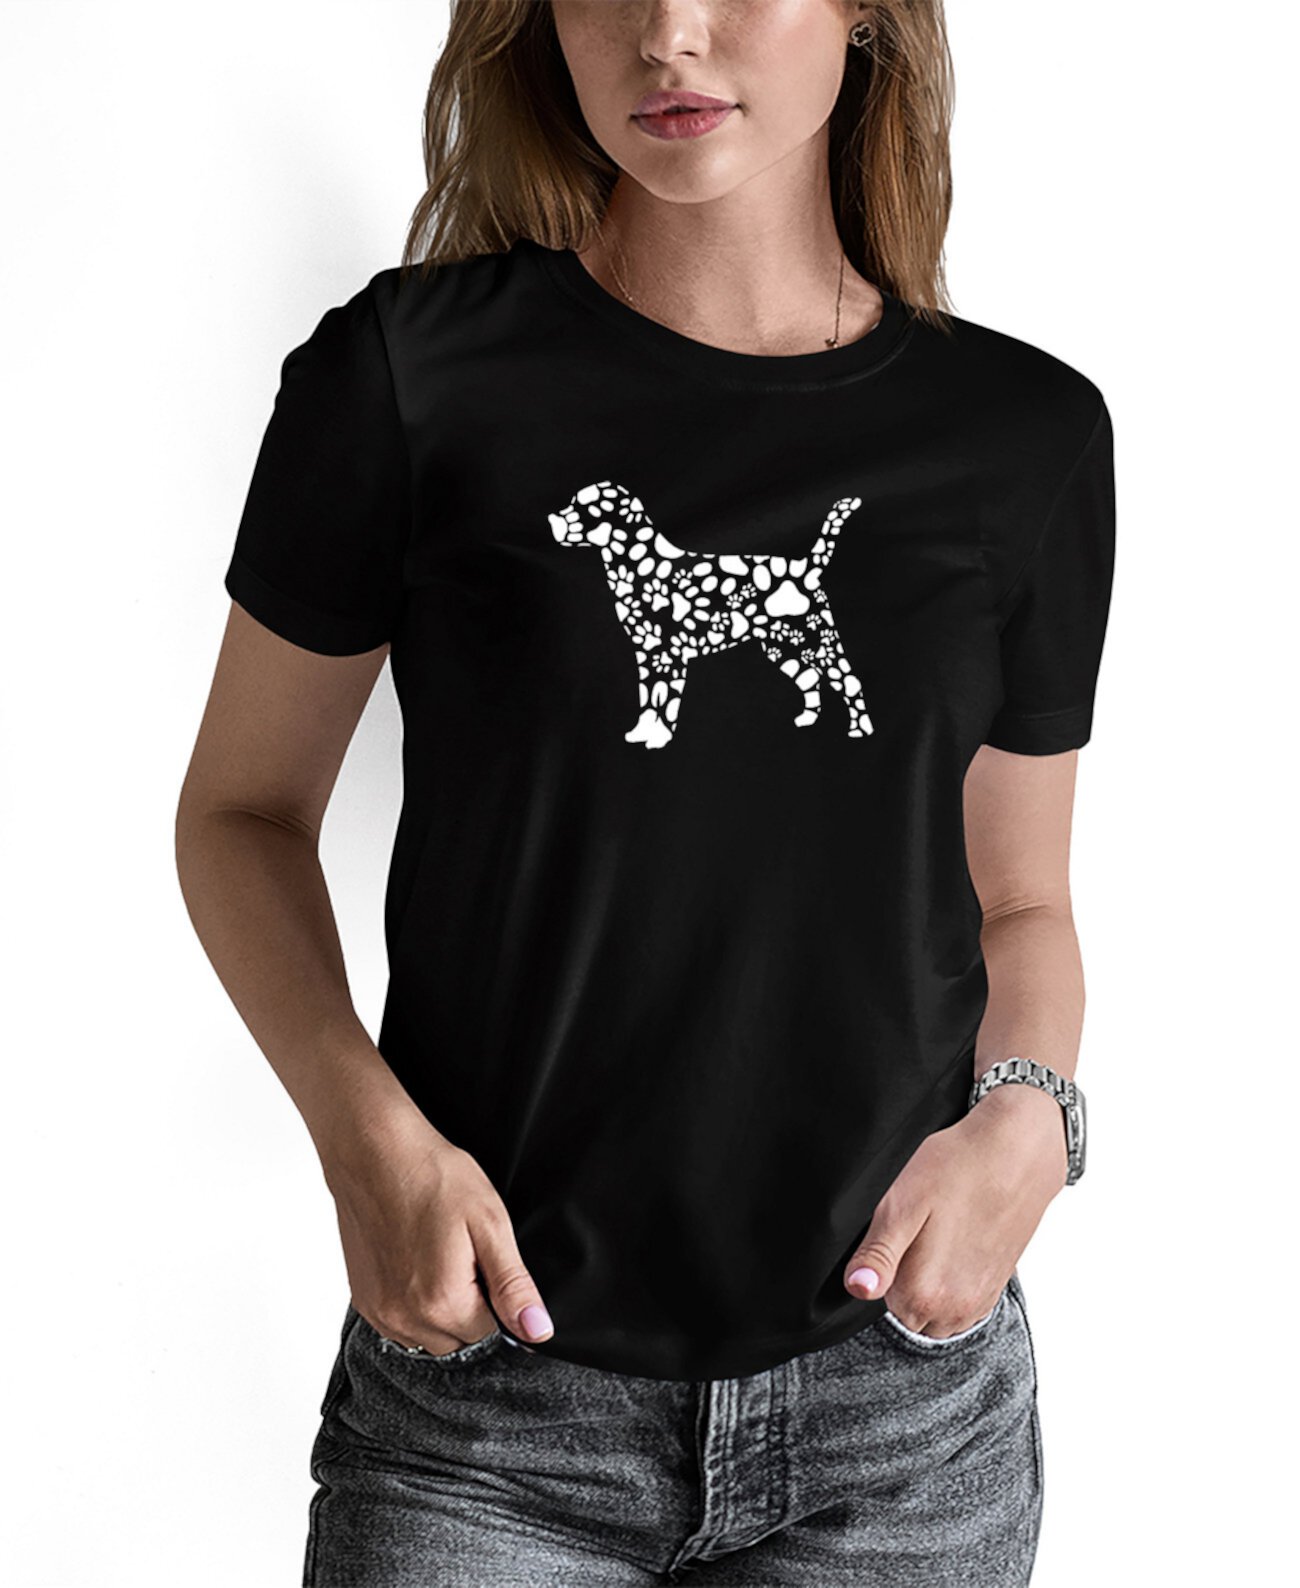 Женская футболка Word Art с принтами собачьих лап LA Pop Art